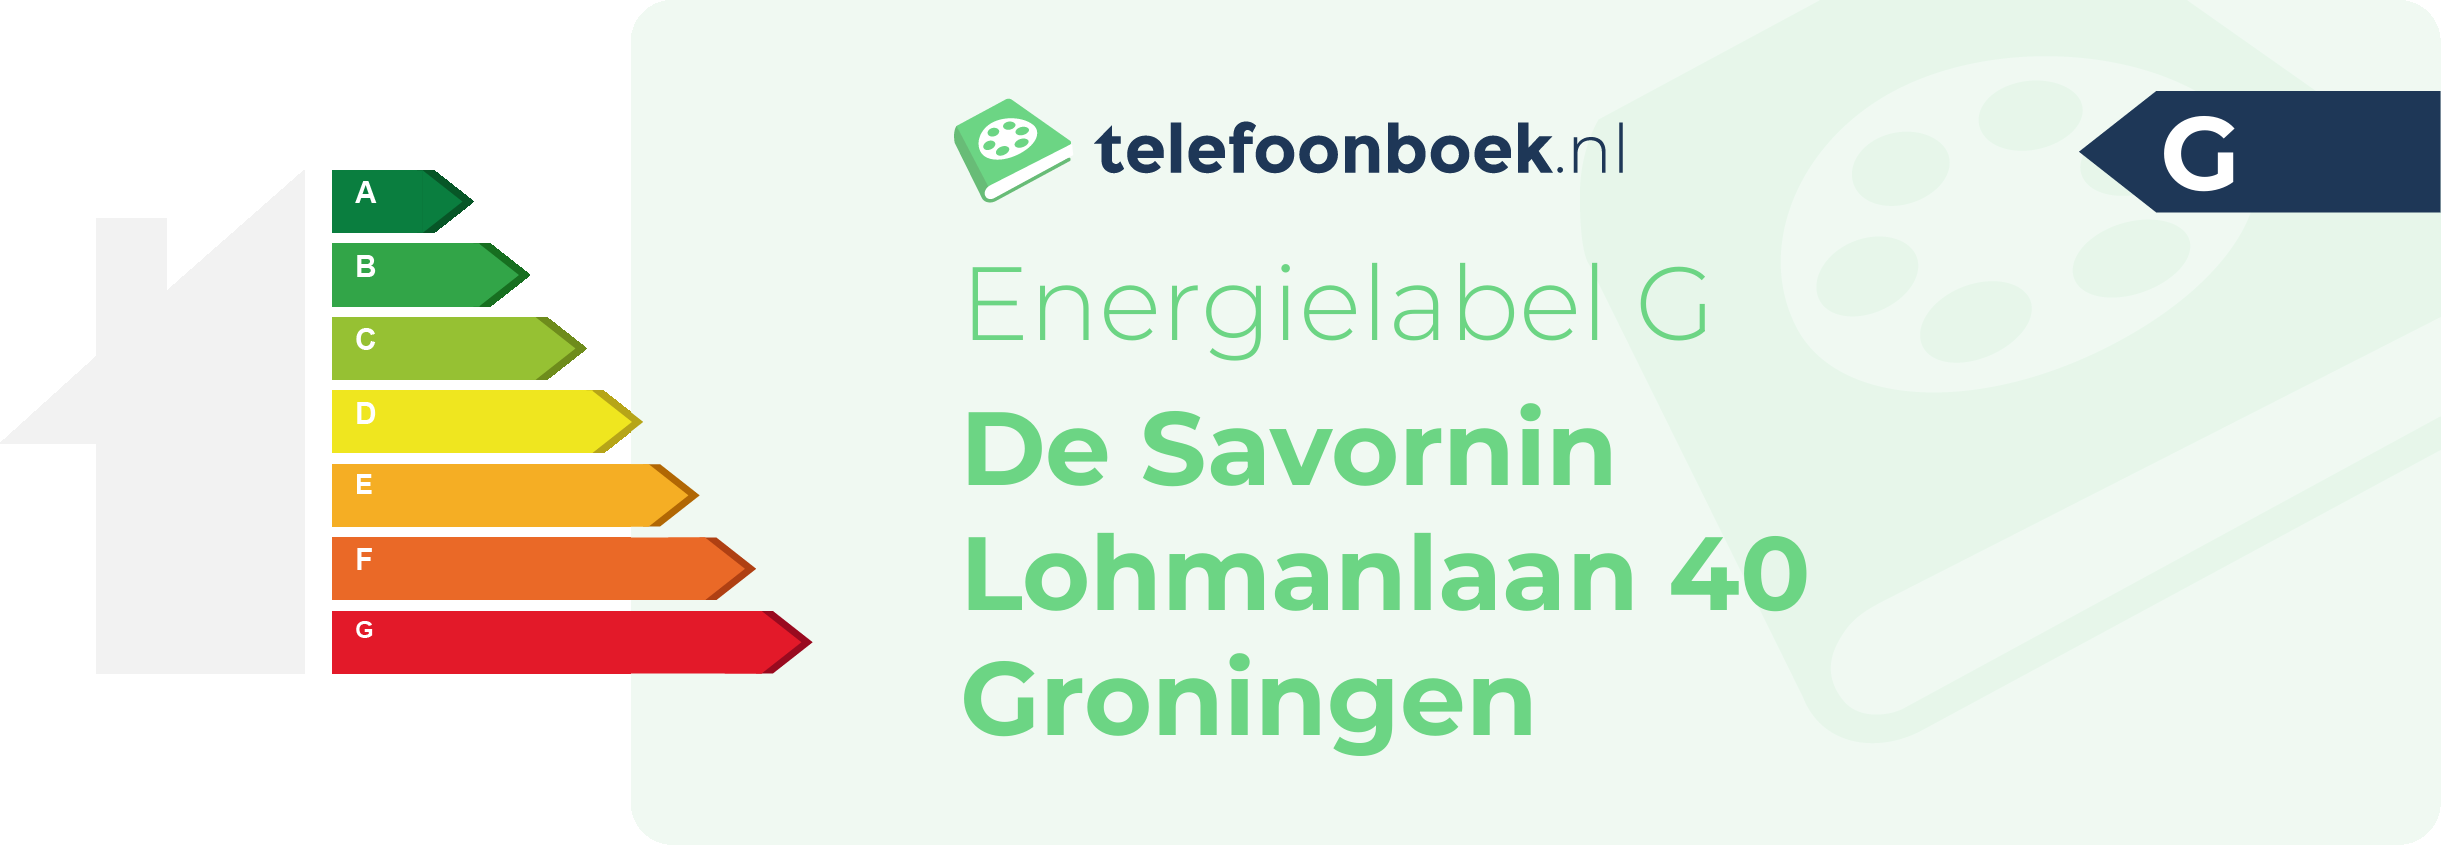 Energielabel De Savornin Lohmanlaan 40 Groningen